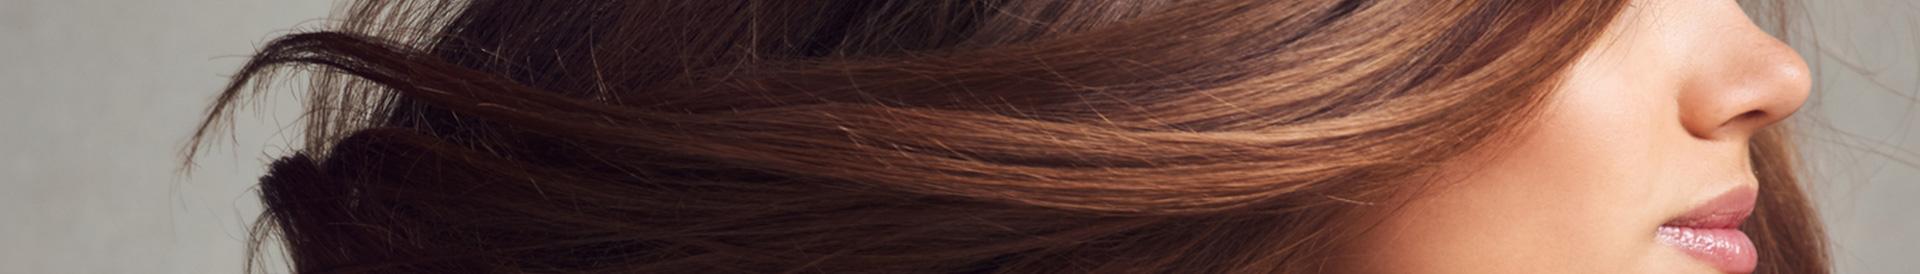 Kobieta z długimi brązowymi włosami